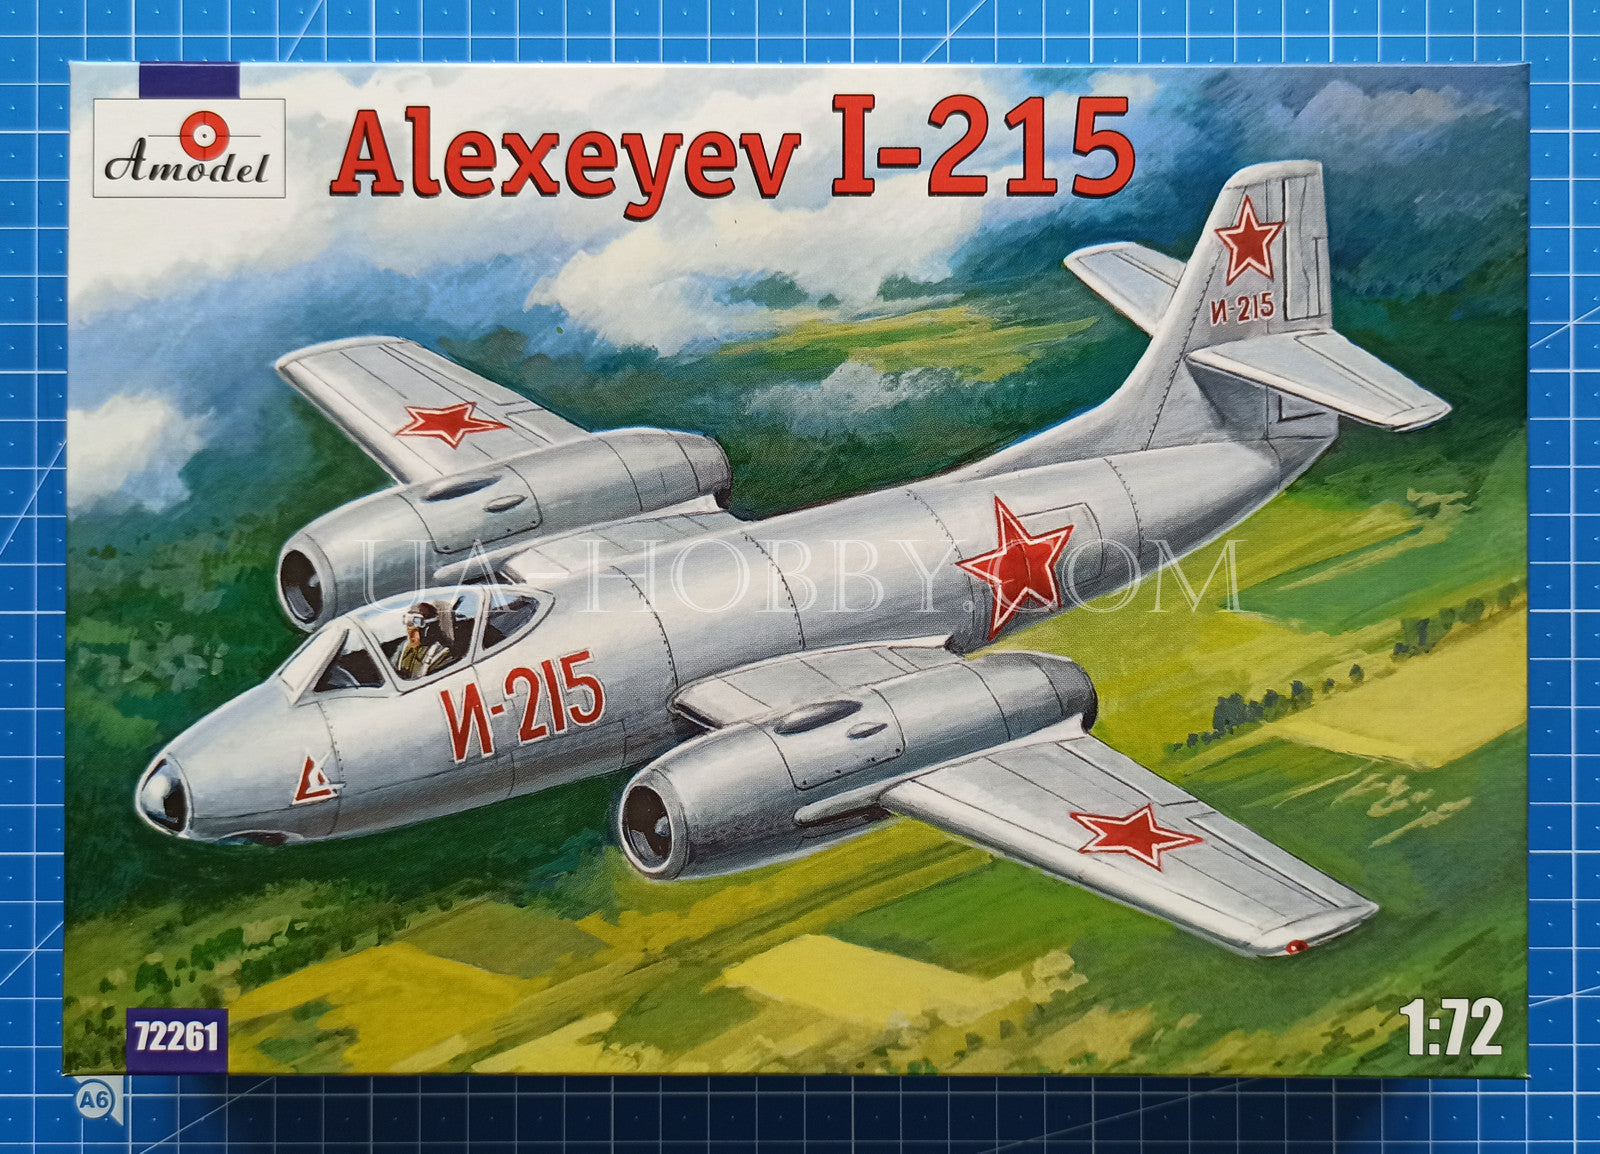 1/72 Alexeyev I-215. Amodel 72261